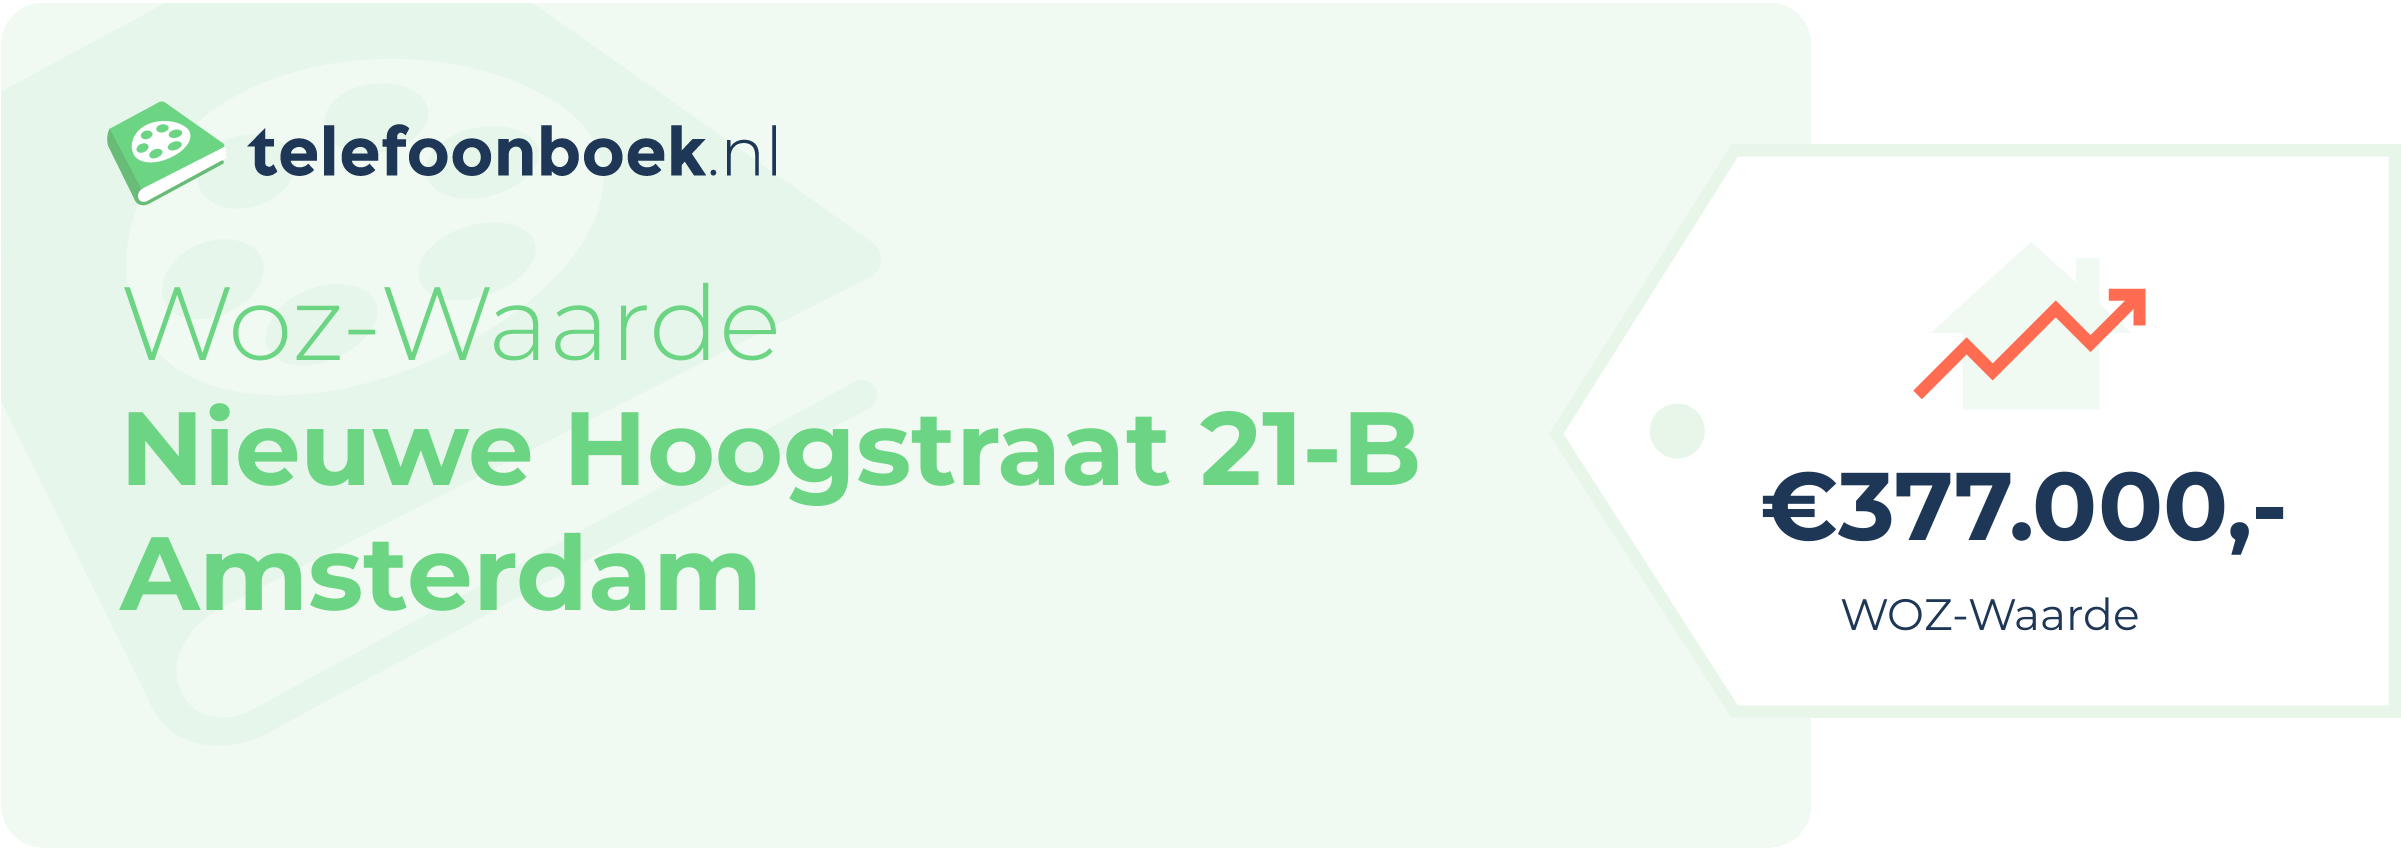 WOZ-waarde Nieuwe Hoogstraat 21-B Amsterdam